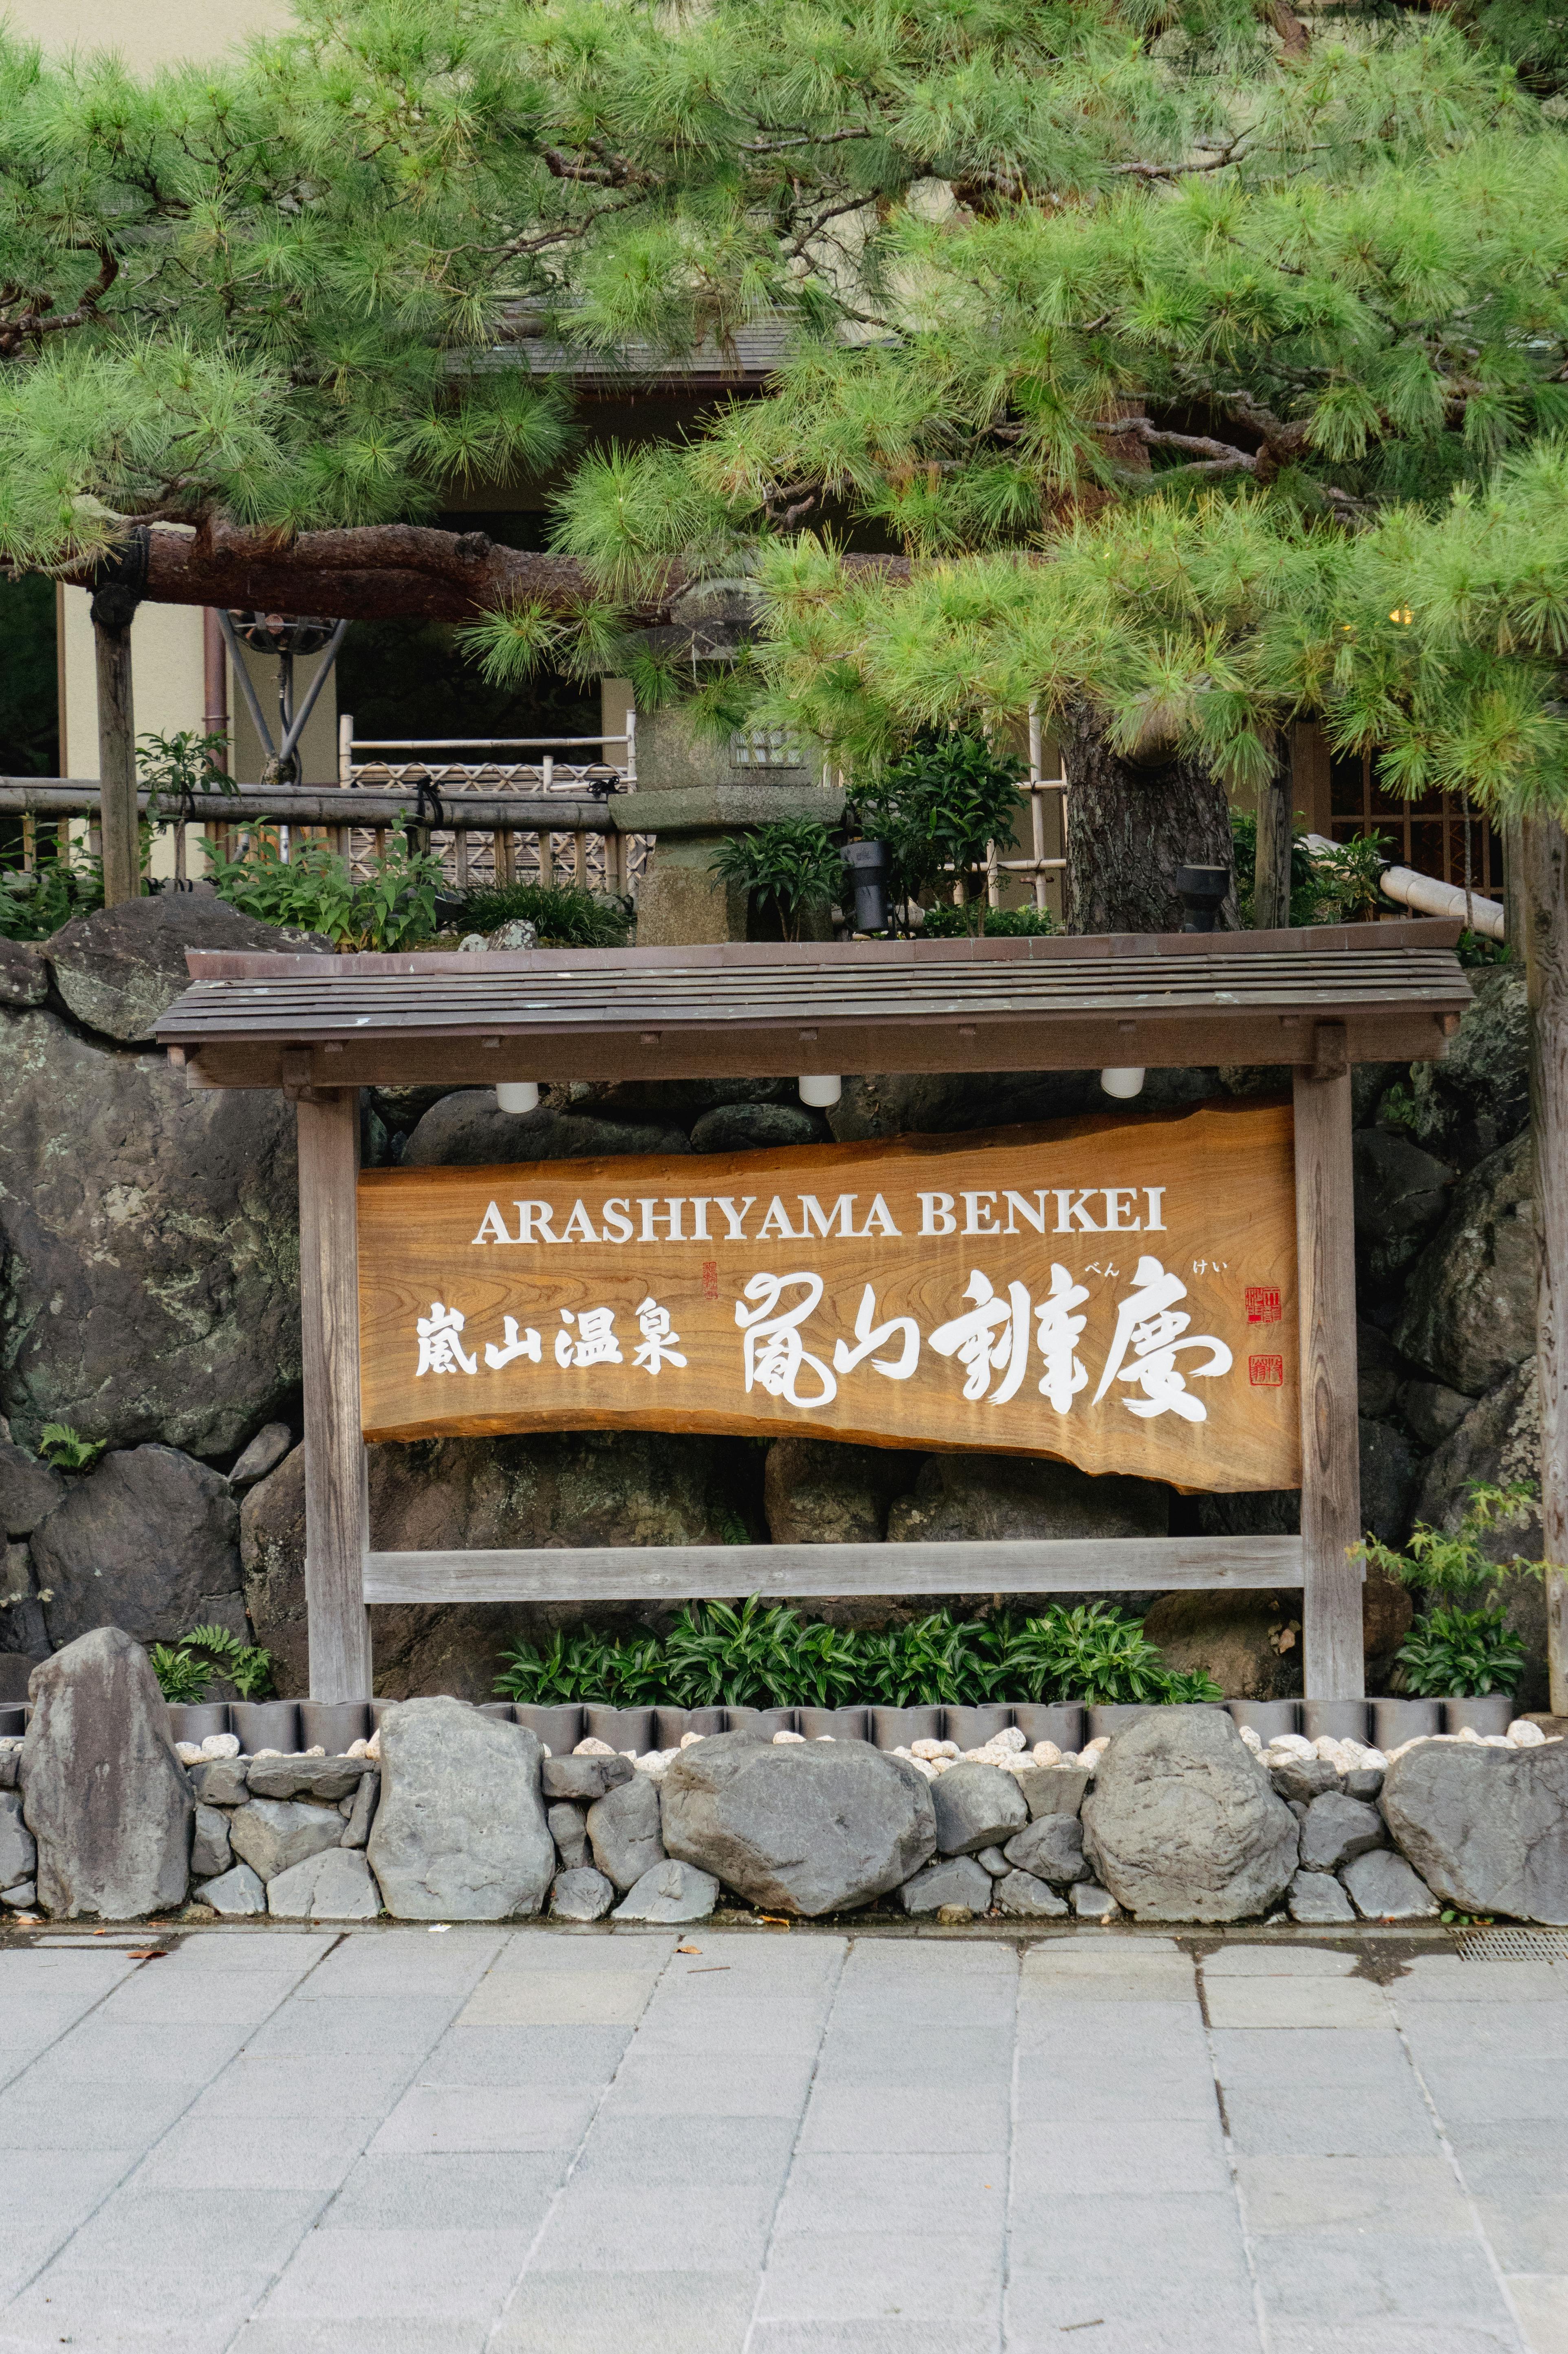 arashiyama benkei hotel board